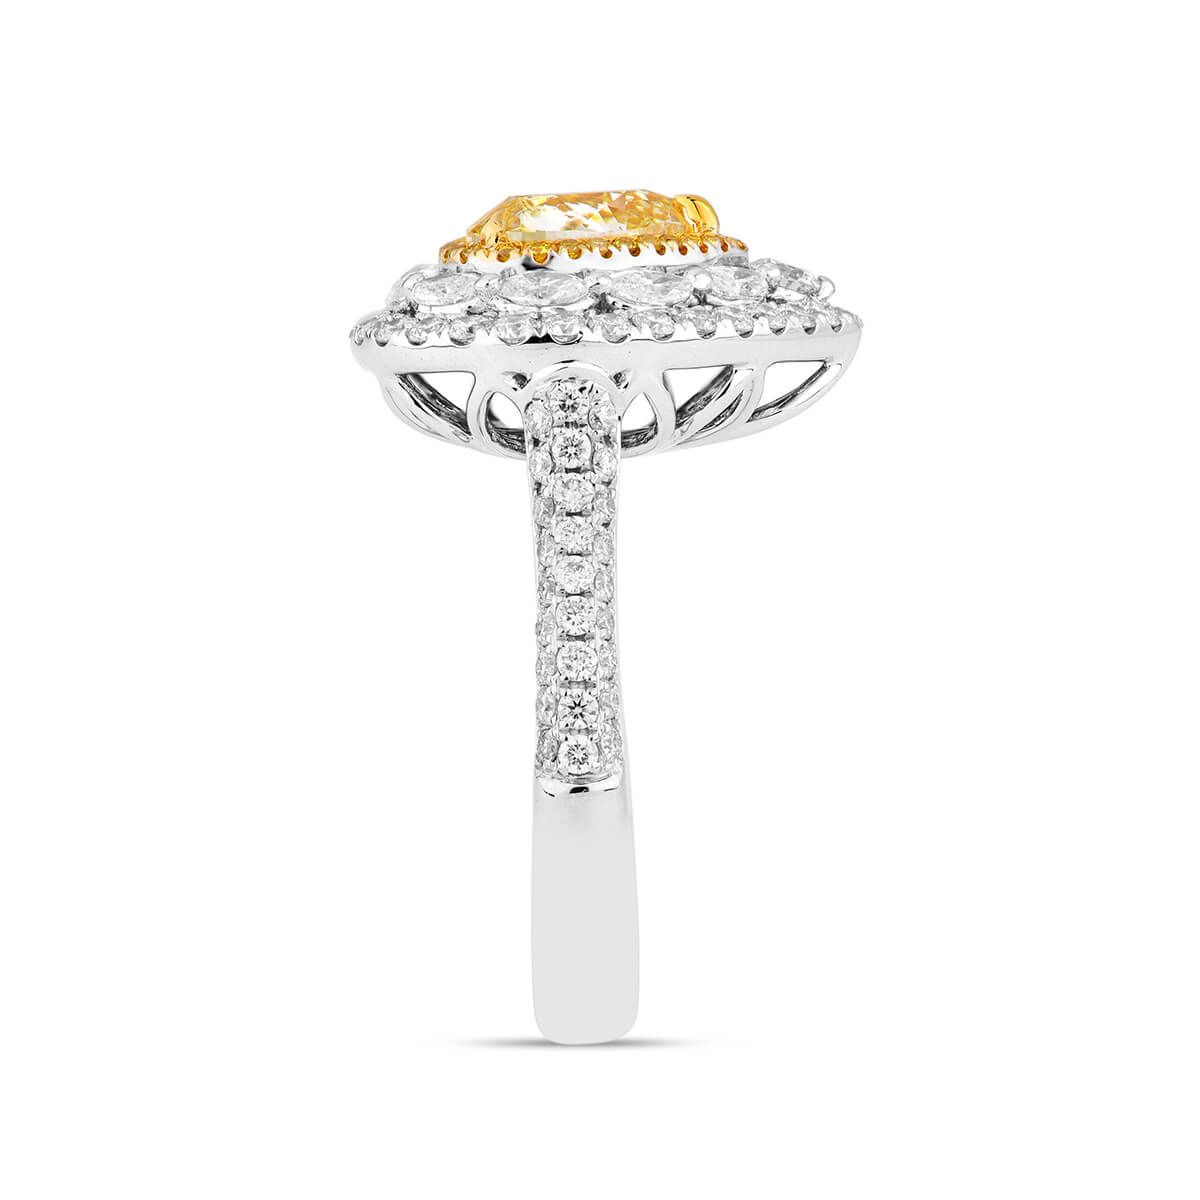 Fancy yellow Diamond Ring 2.01 ct. Heart Shape, GIA certified 1215816217